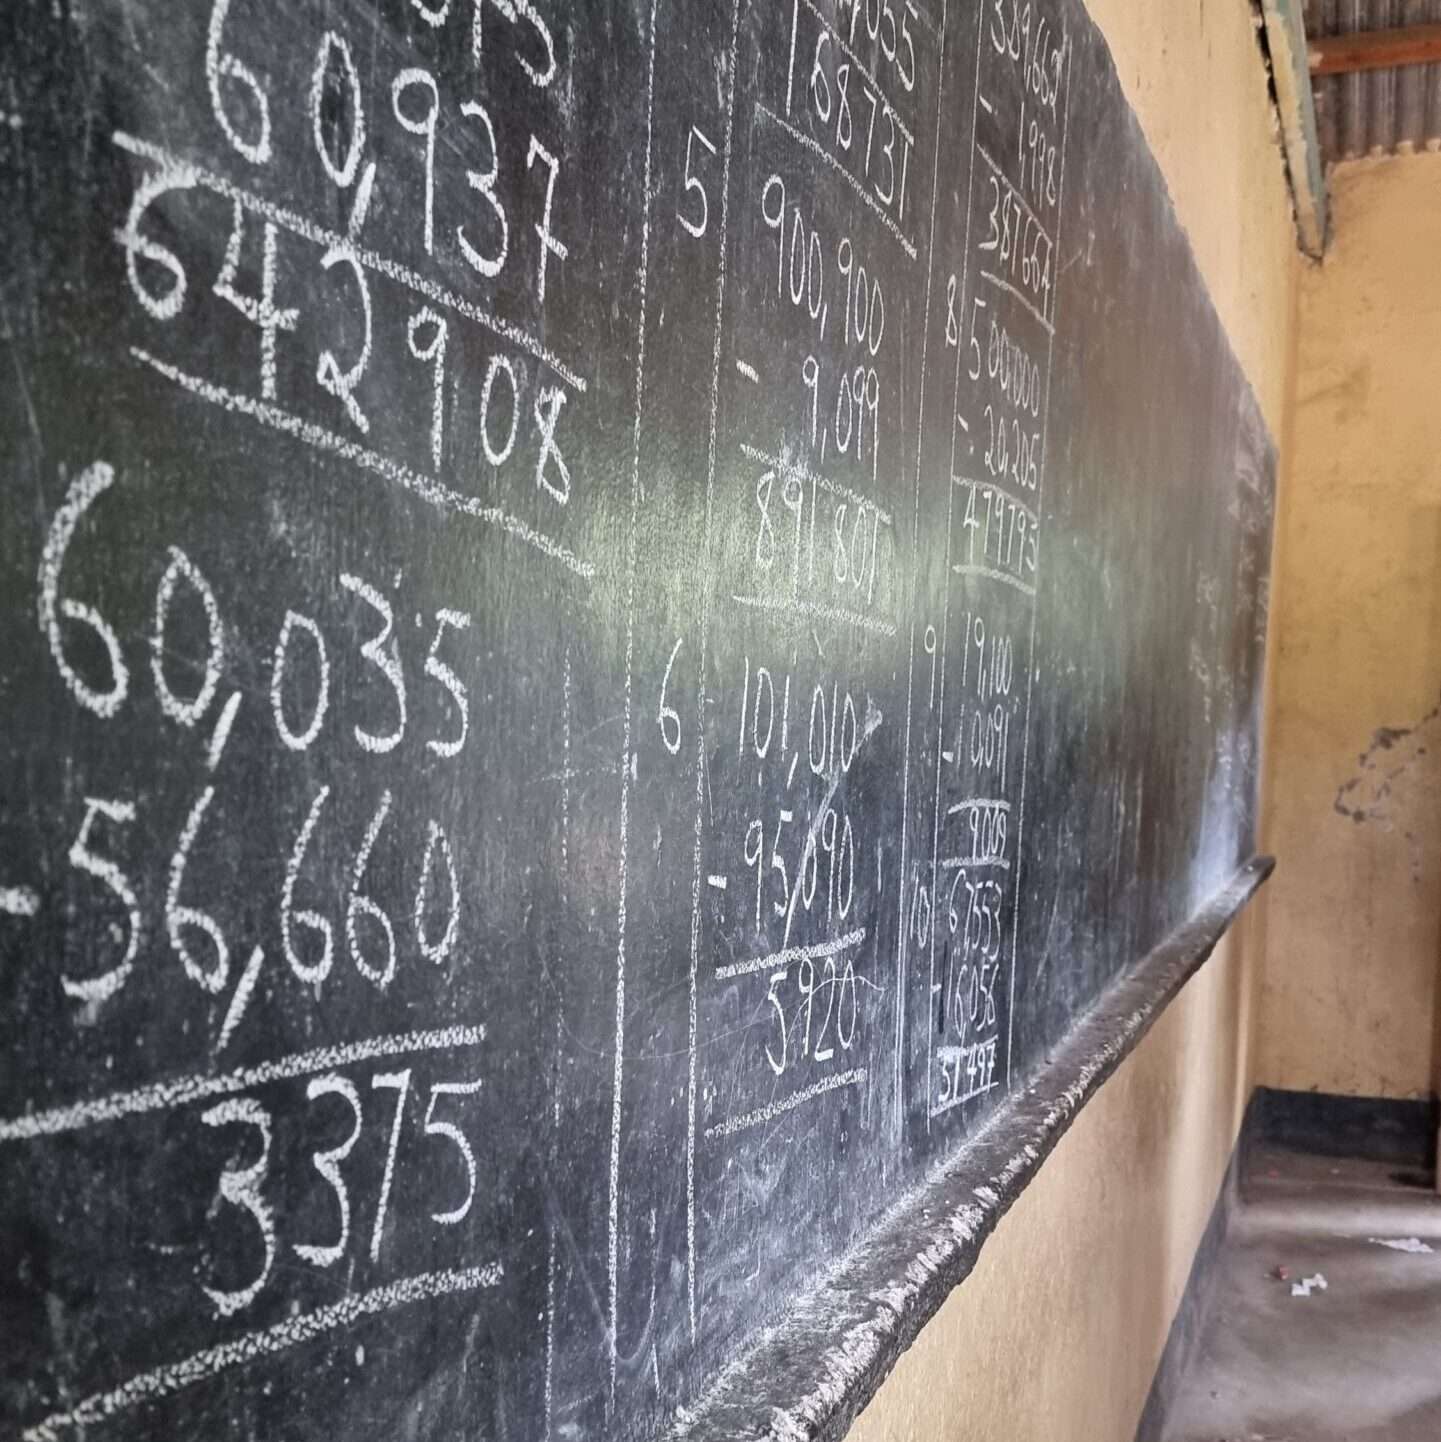 Tableau d'école de la classe, avec des calculs mathématiques écrits à la craie.